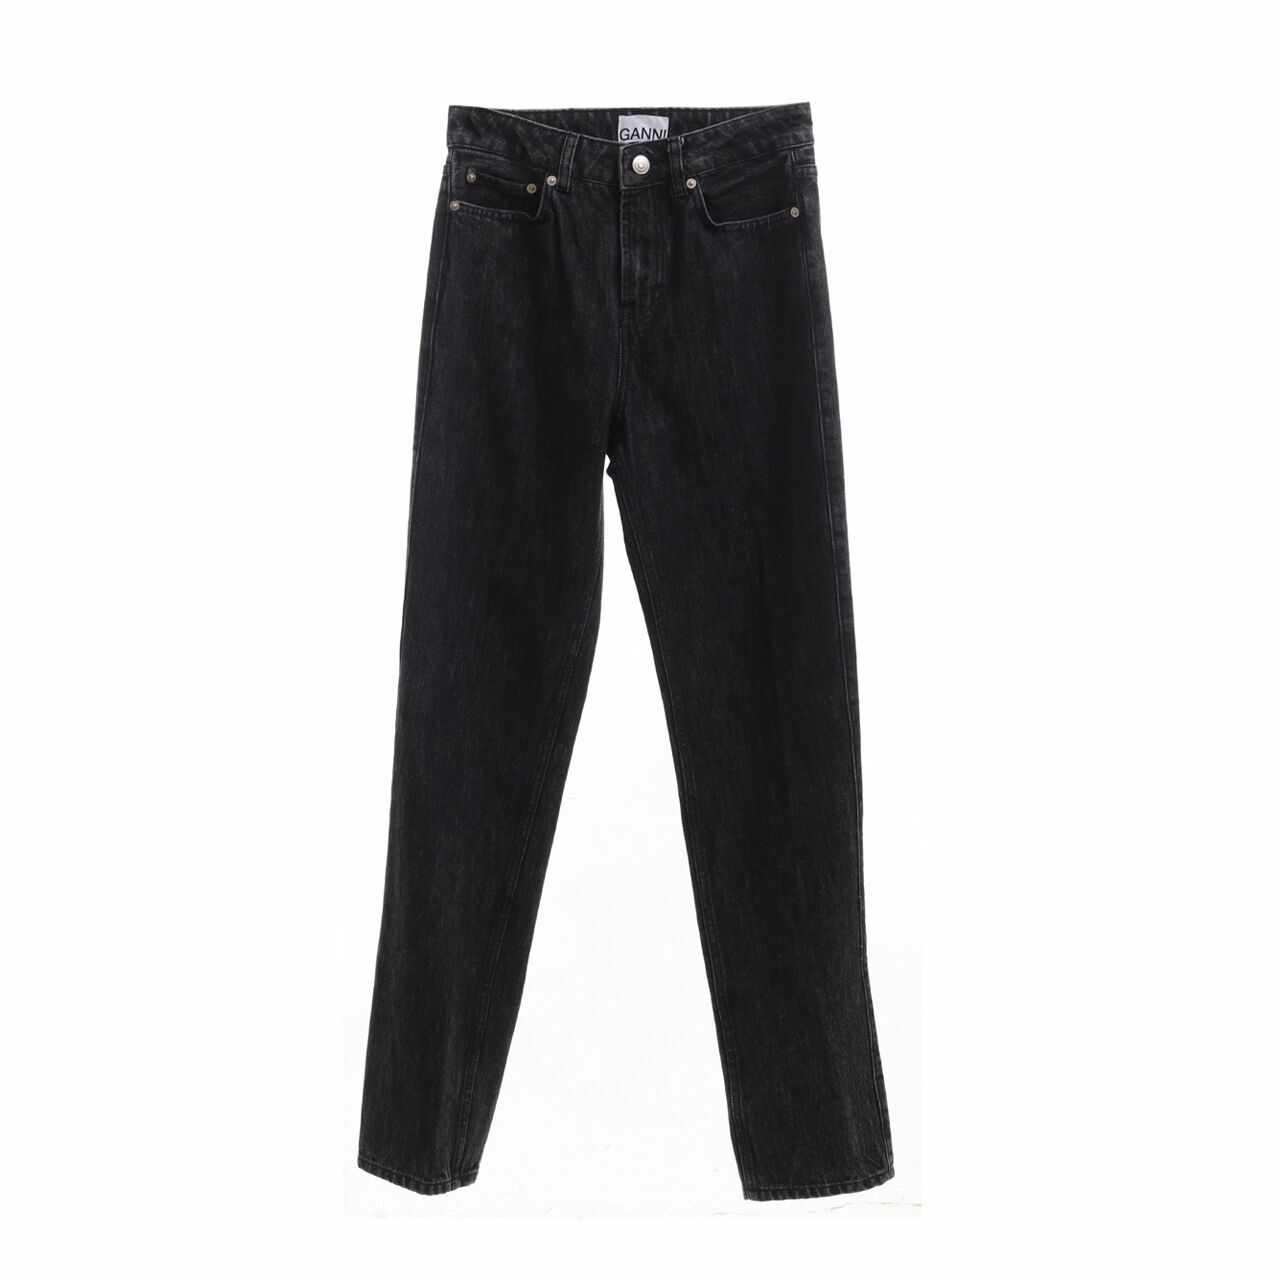 Ganni Black Denim Jeans long Pants